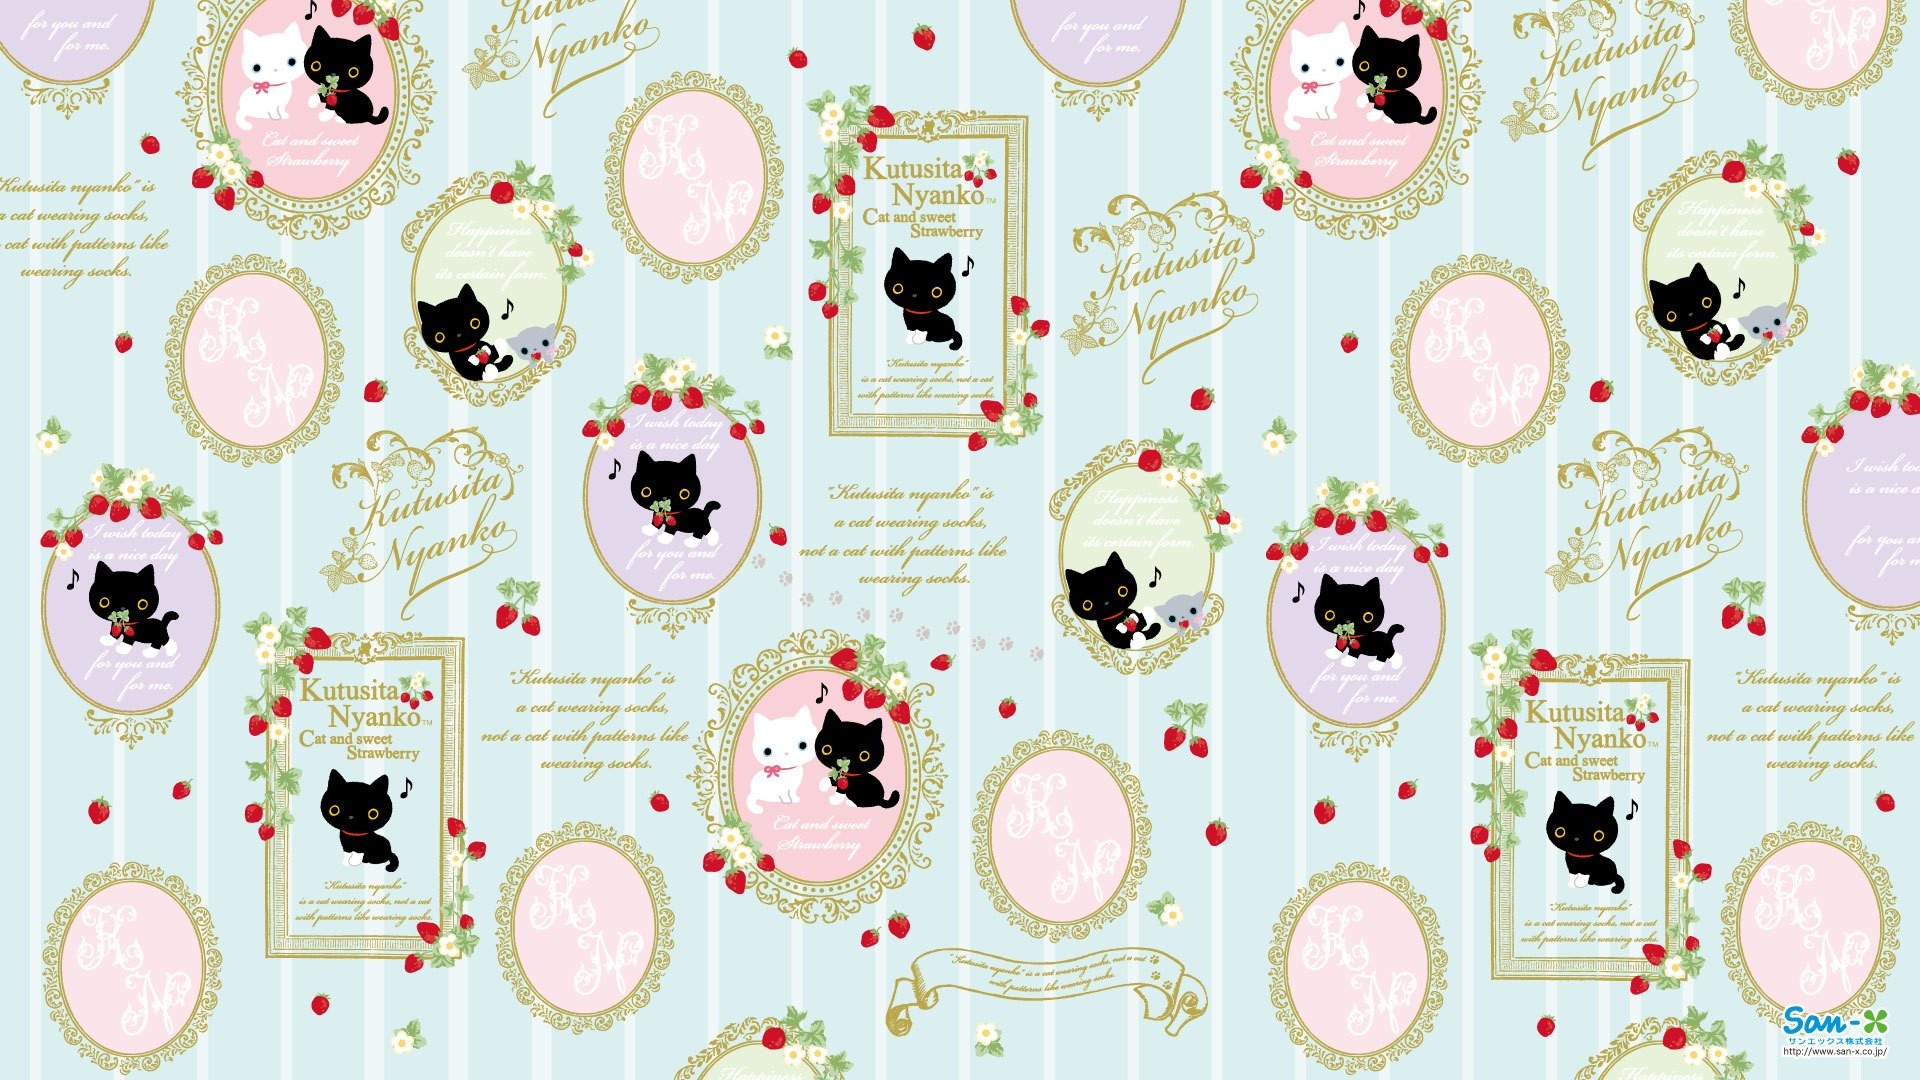 1920x1080 Kutusita Nyanko Cat and Strawberry Wallpaper